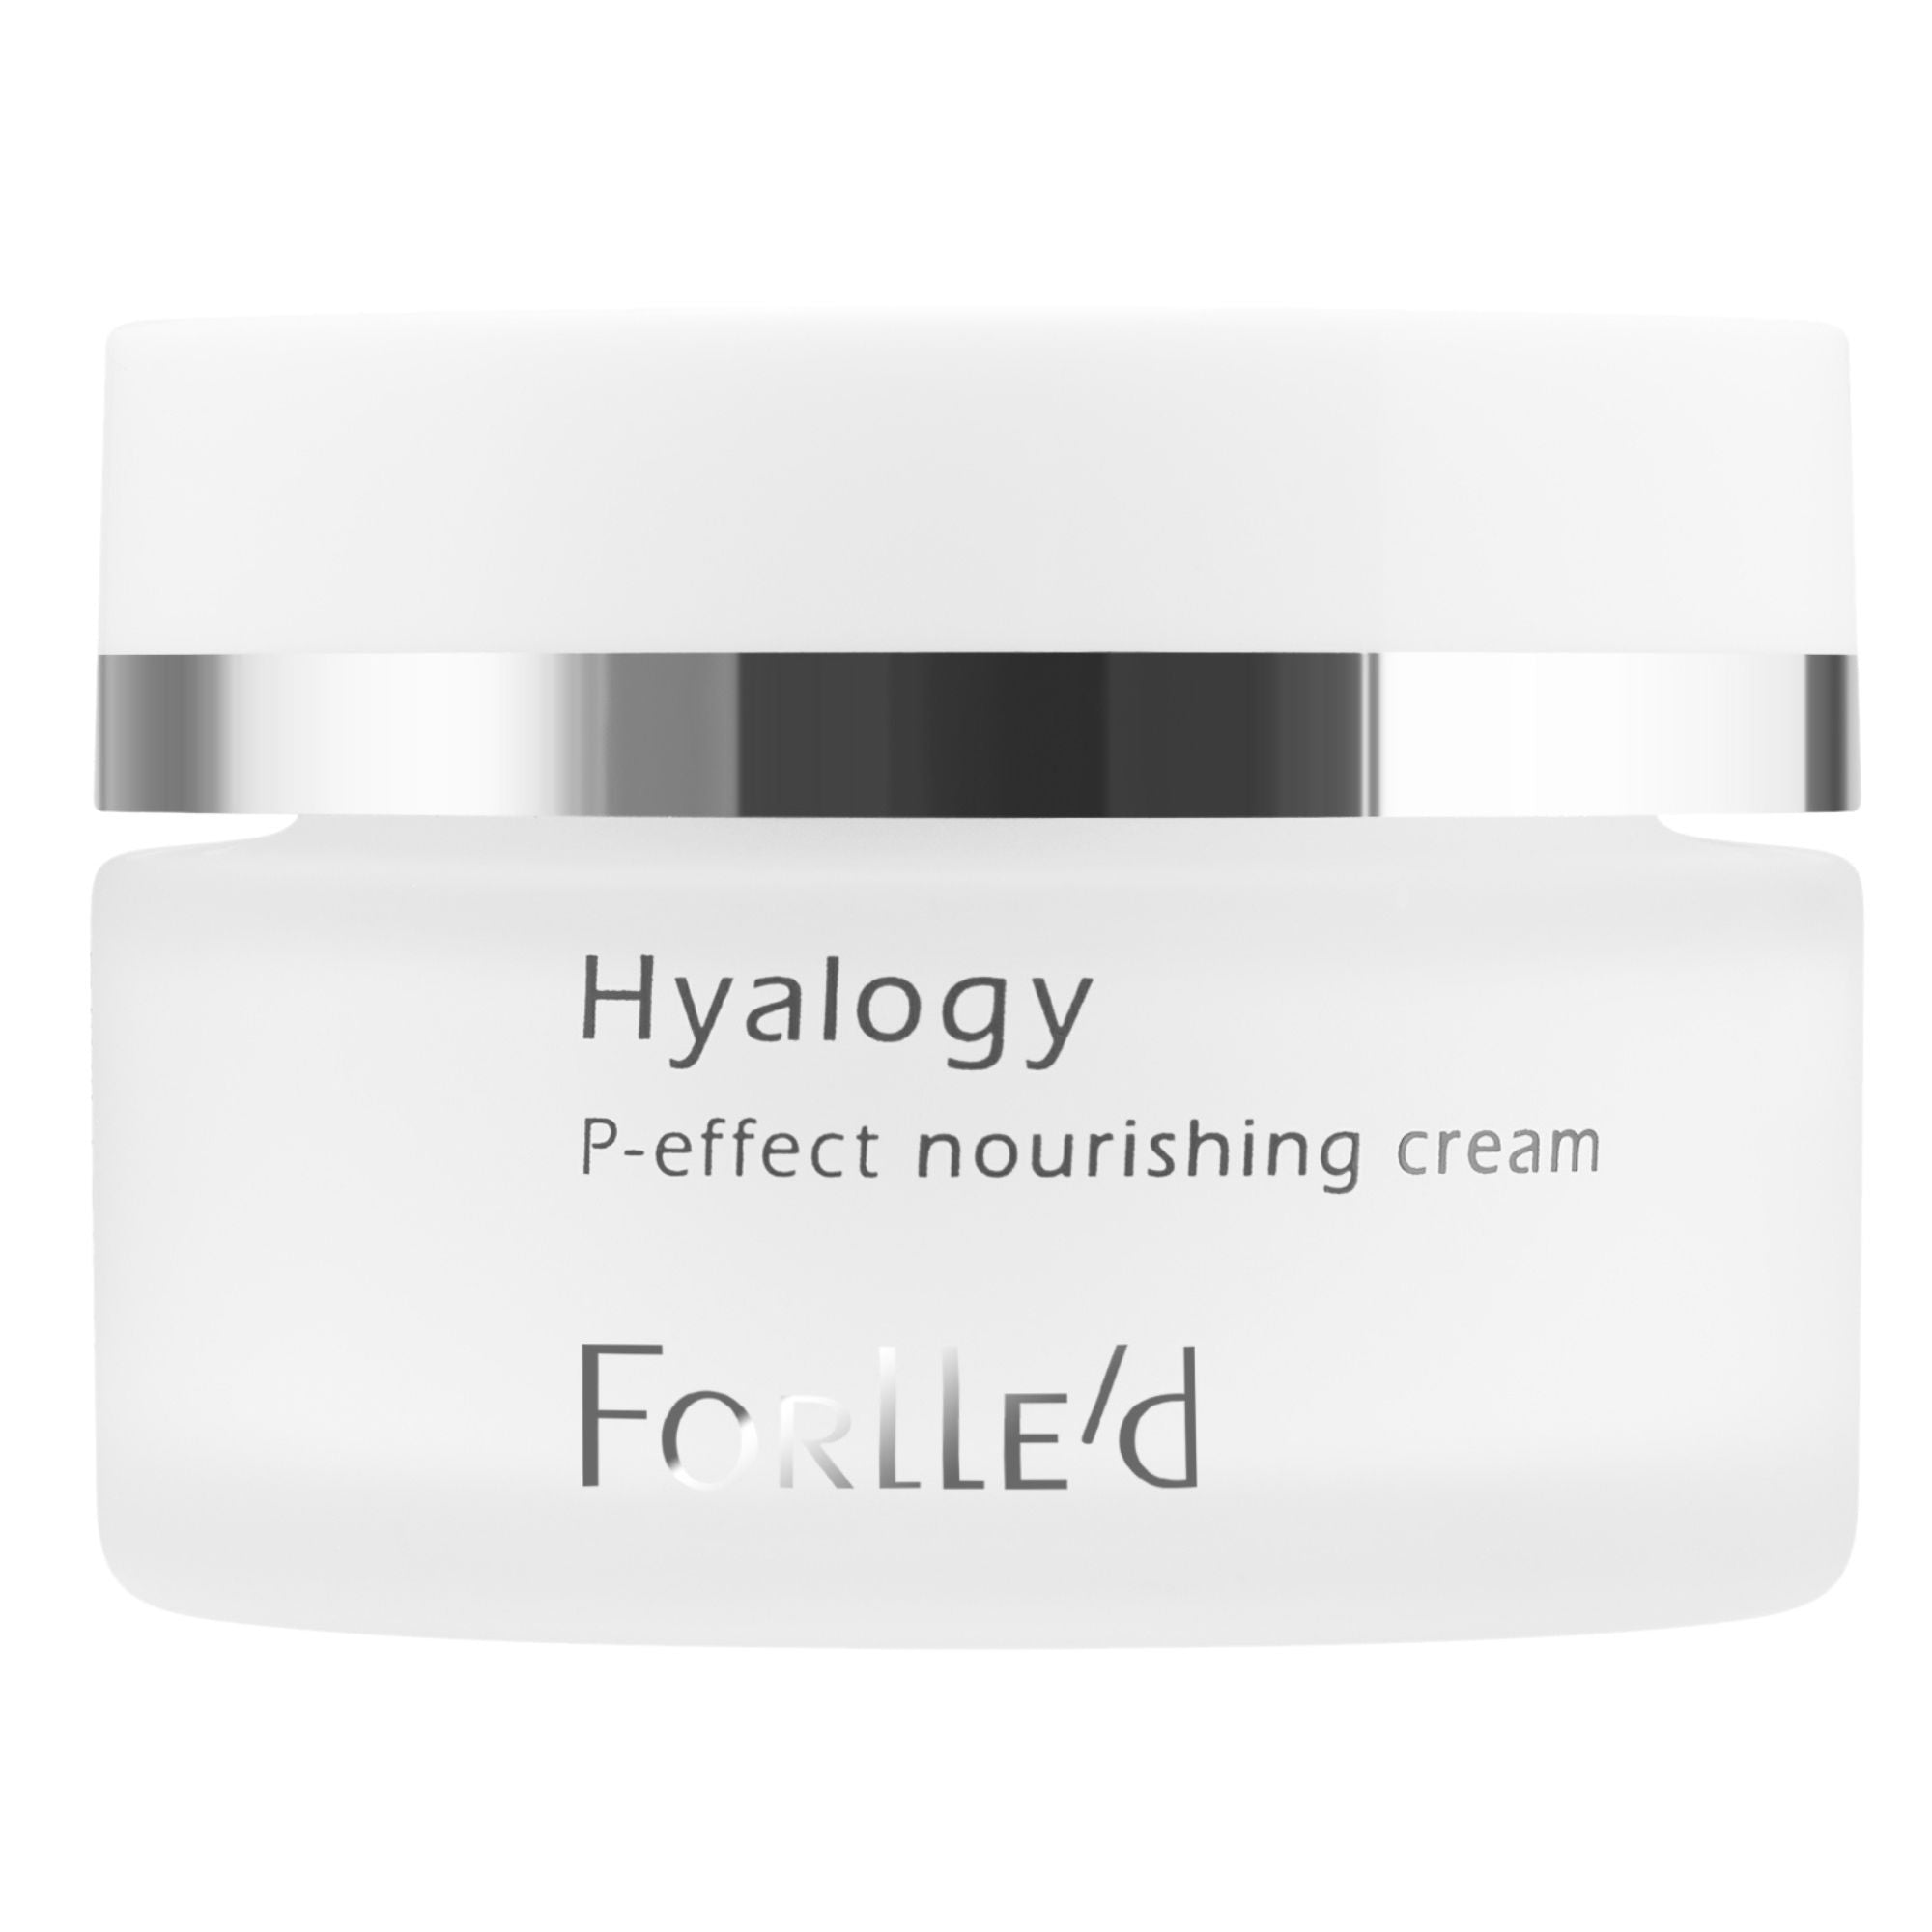 Forlle'd Hyalogy P-effect Nourishing Cream (40ml)